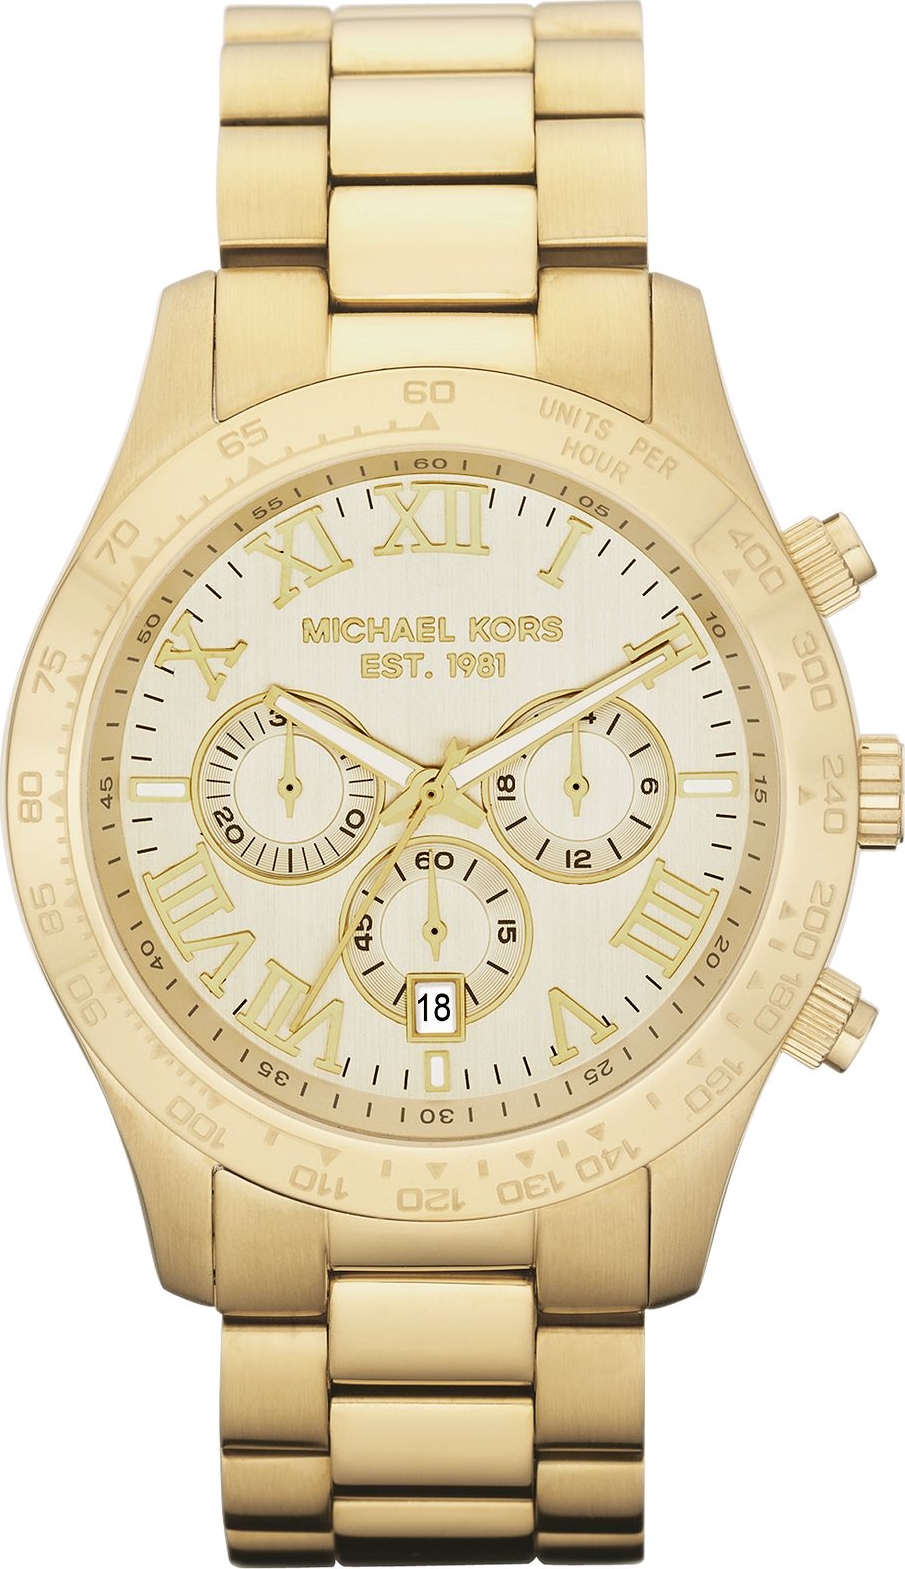 Đồng hồ MK Michael Kors nữ chính hãng Michael Kors MK5948 33mm